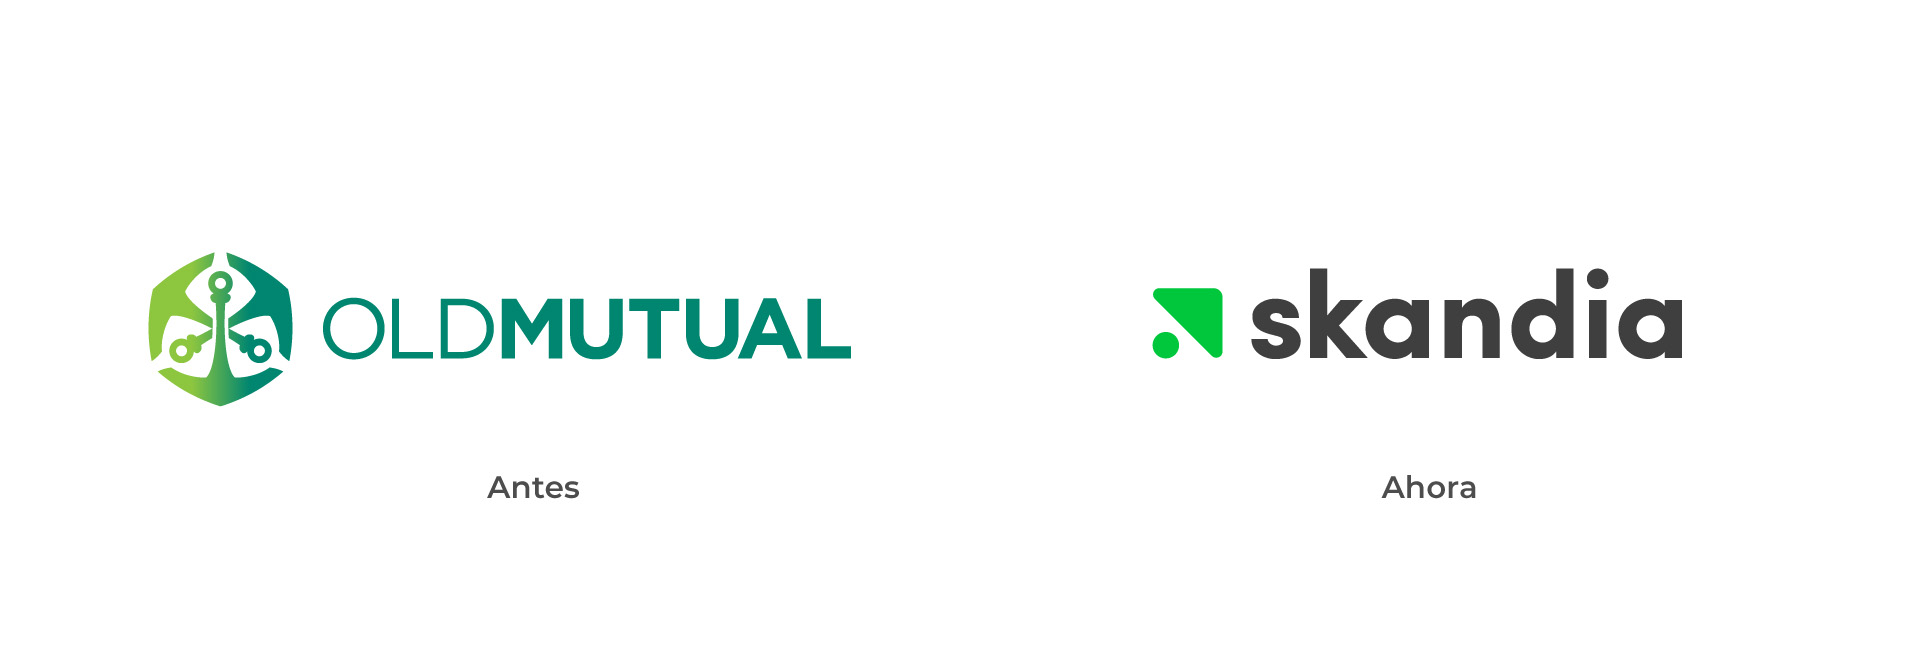 Branding. Comparación entre la marca corporativa anterior y el nuevo logo de Skandia